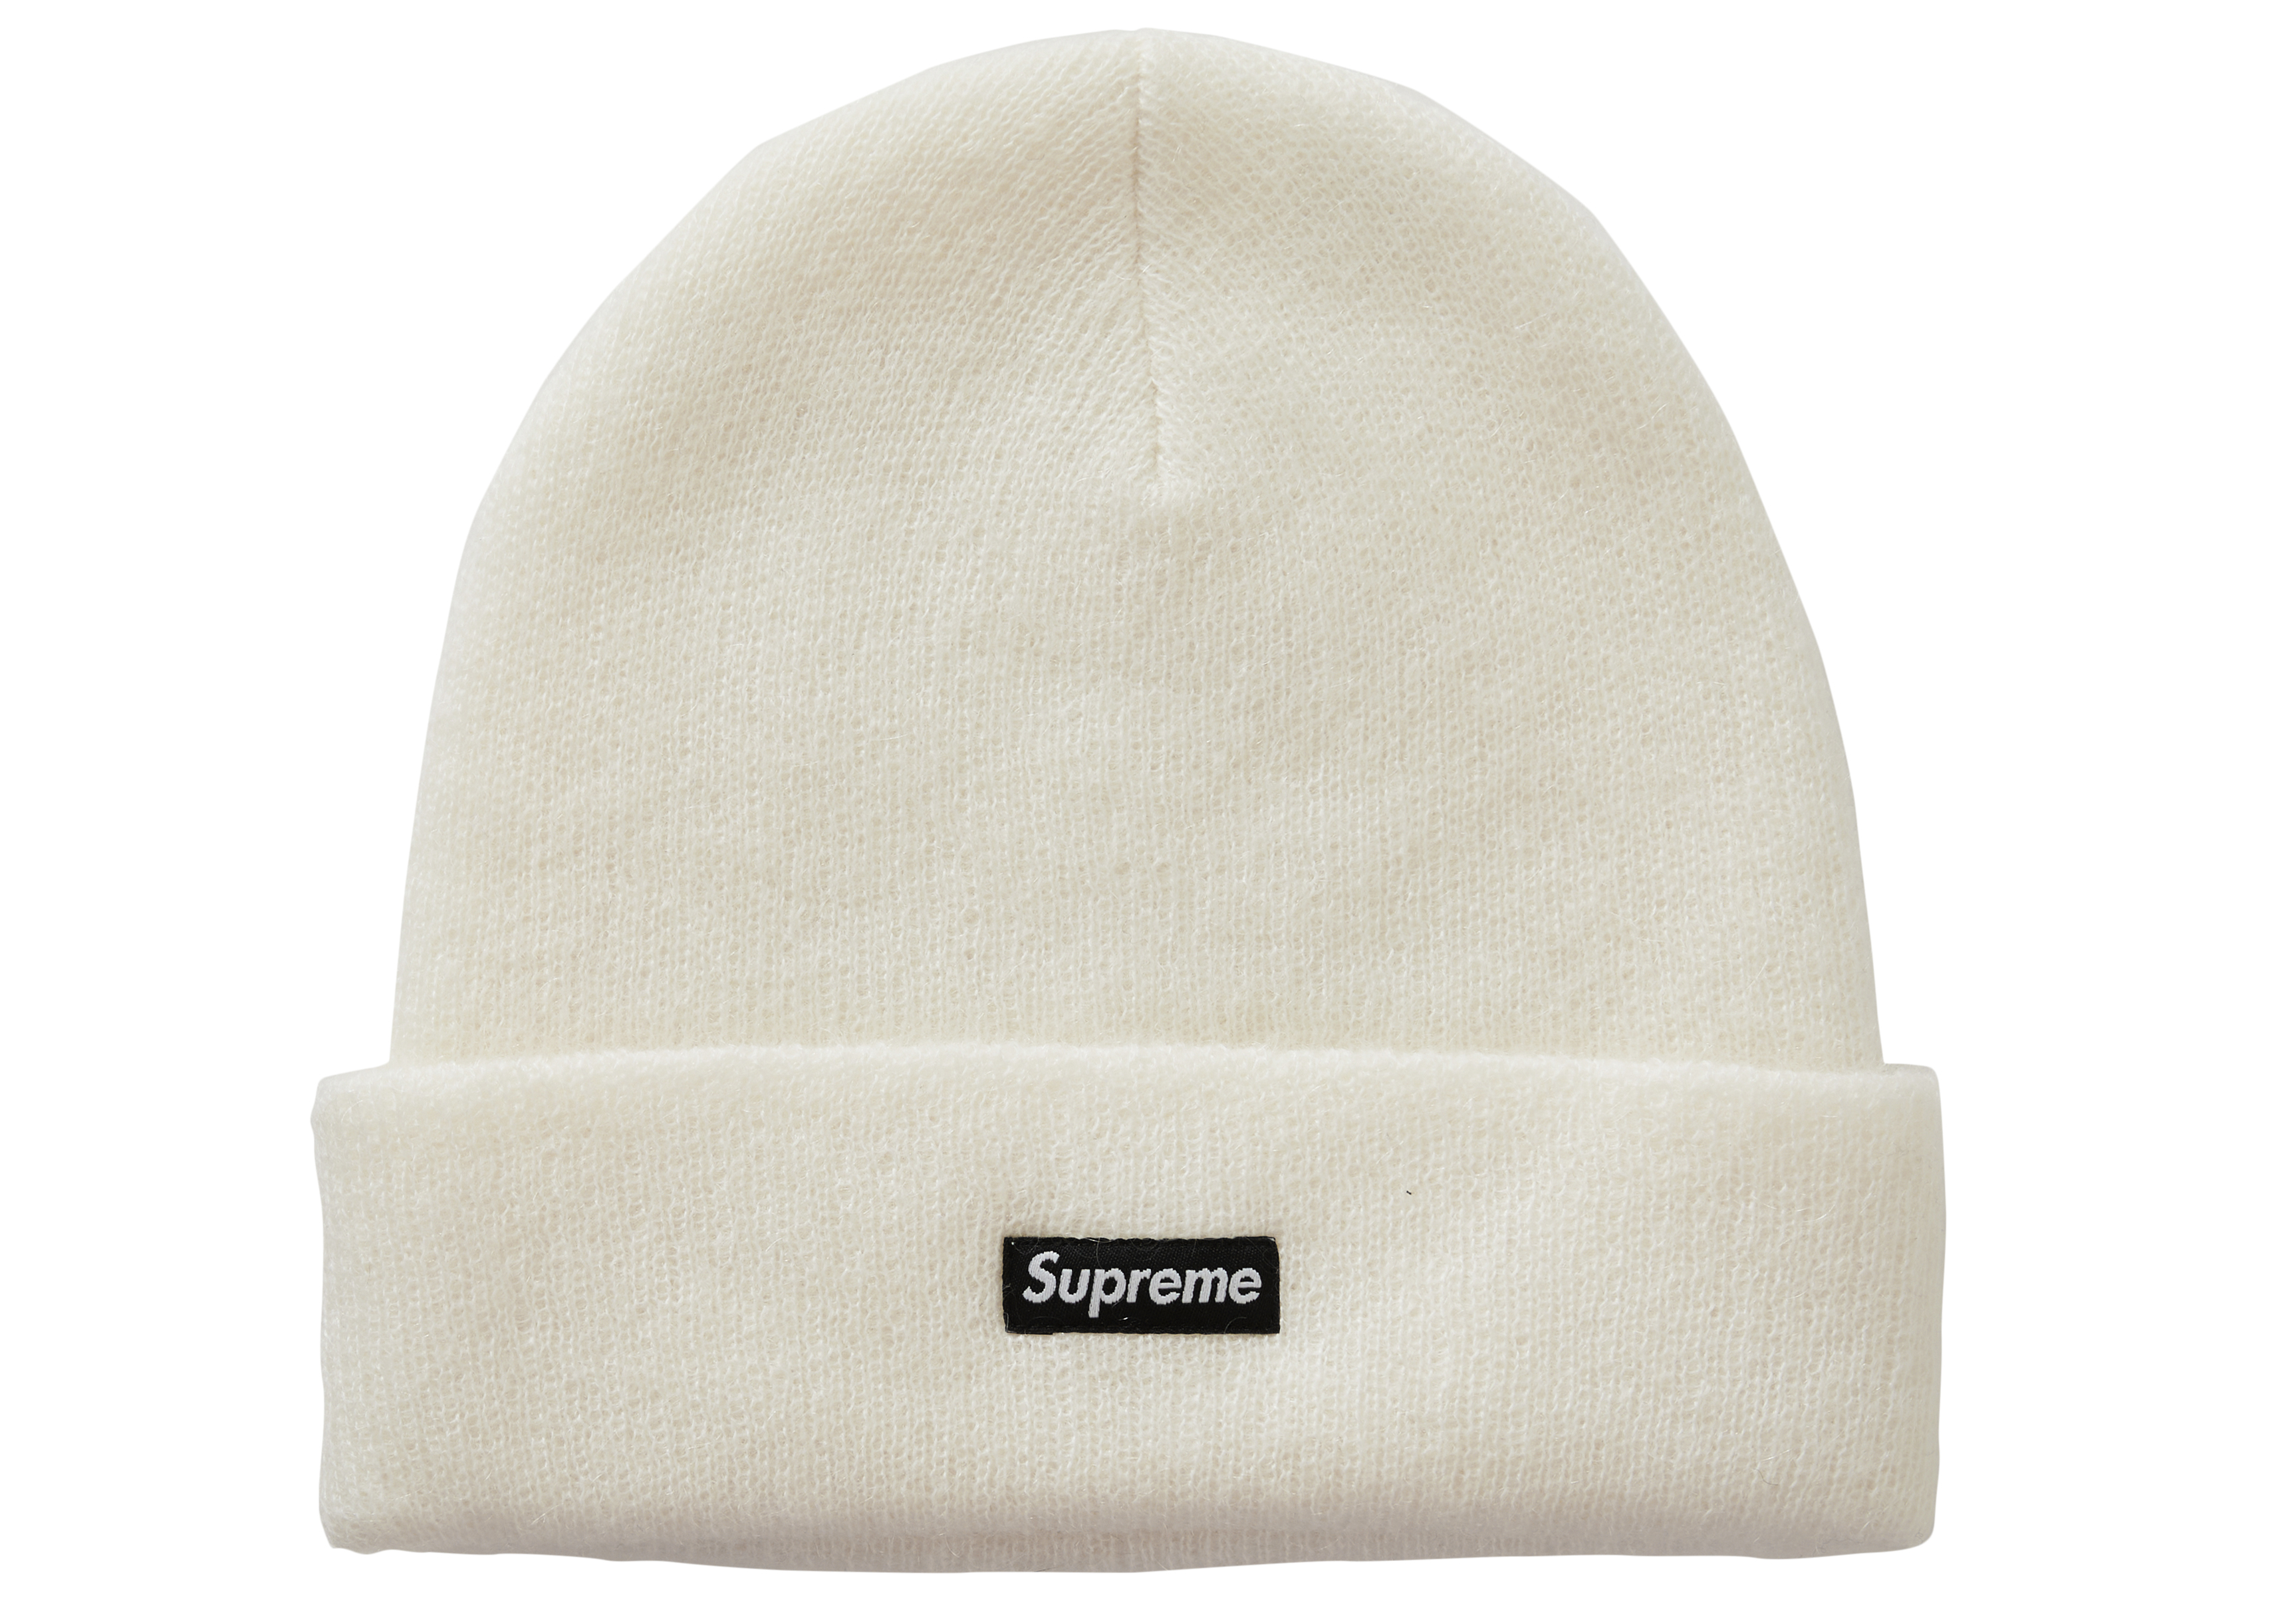 supreme Mohair Beanie White帽子